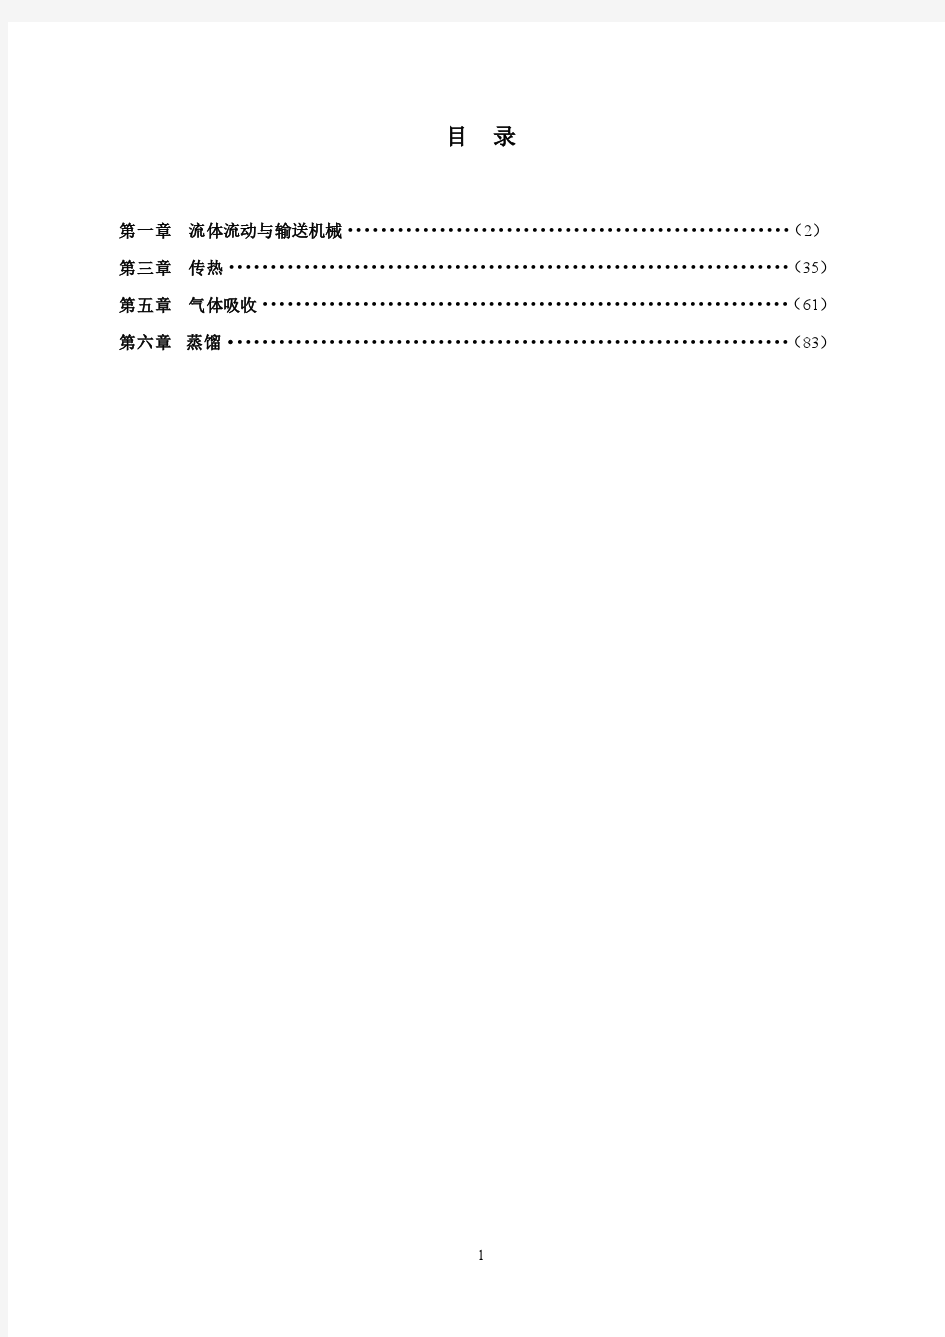 最新化工原理第二版、杨祖荣1_3_5_6章习题答案